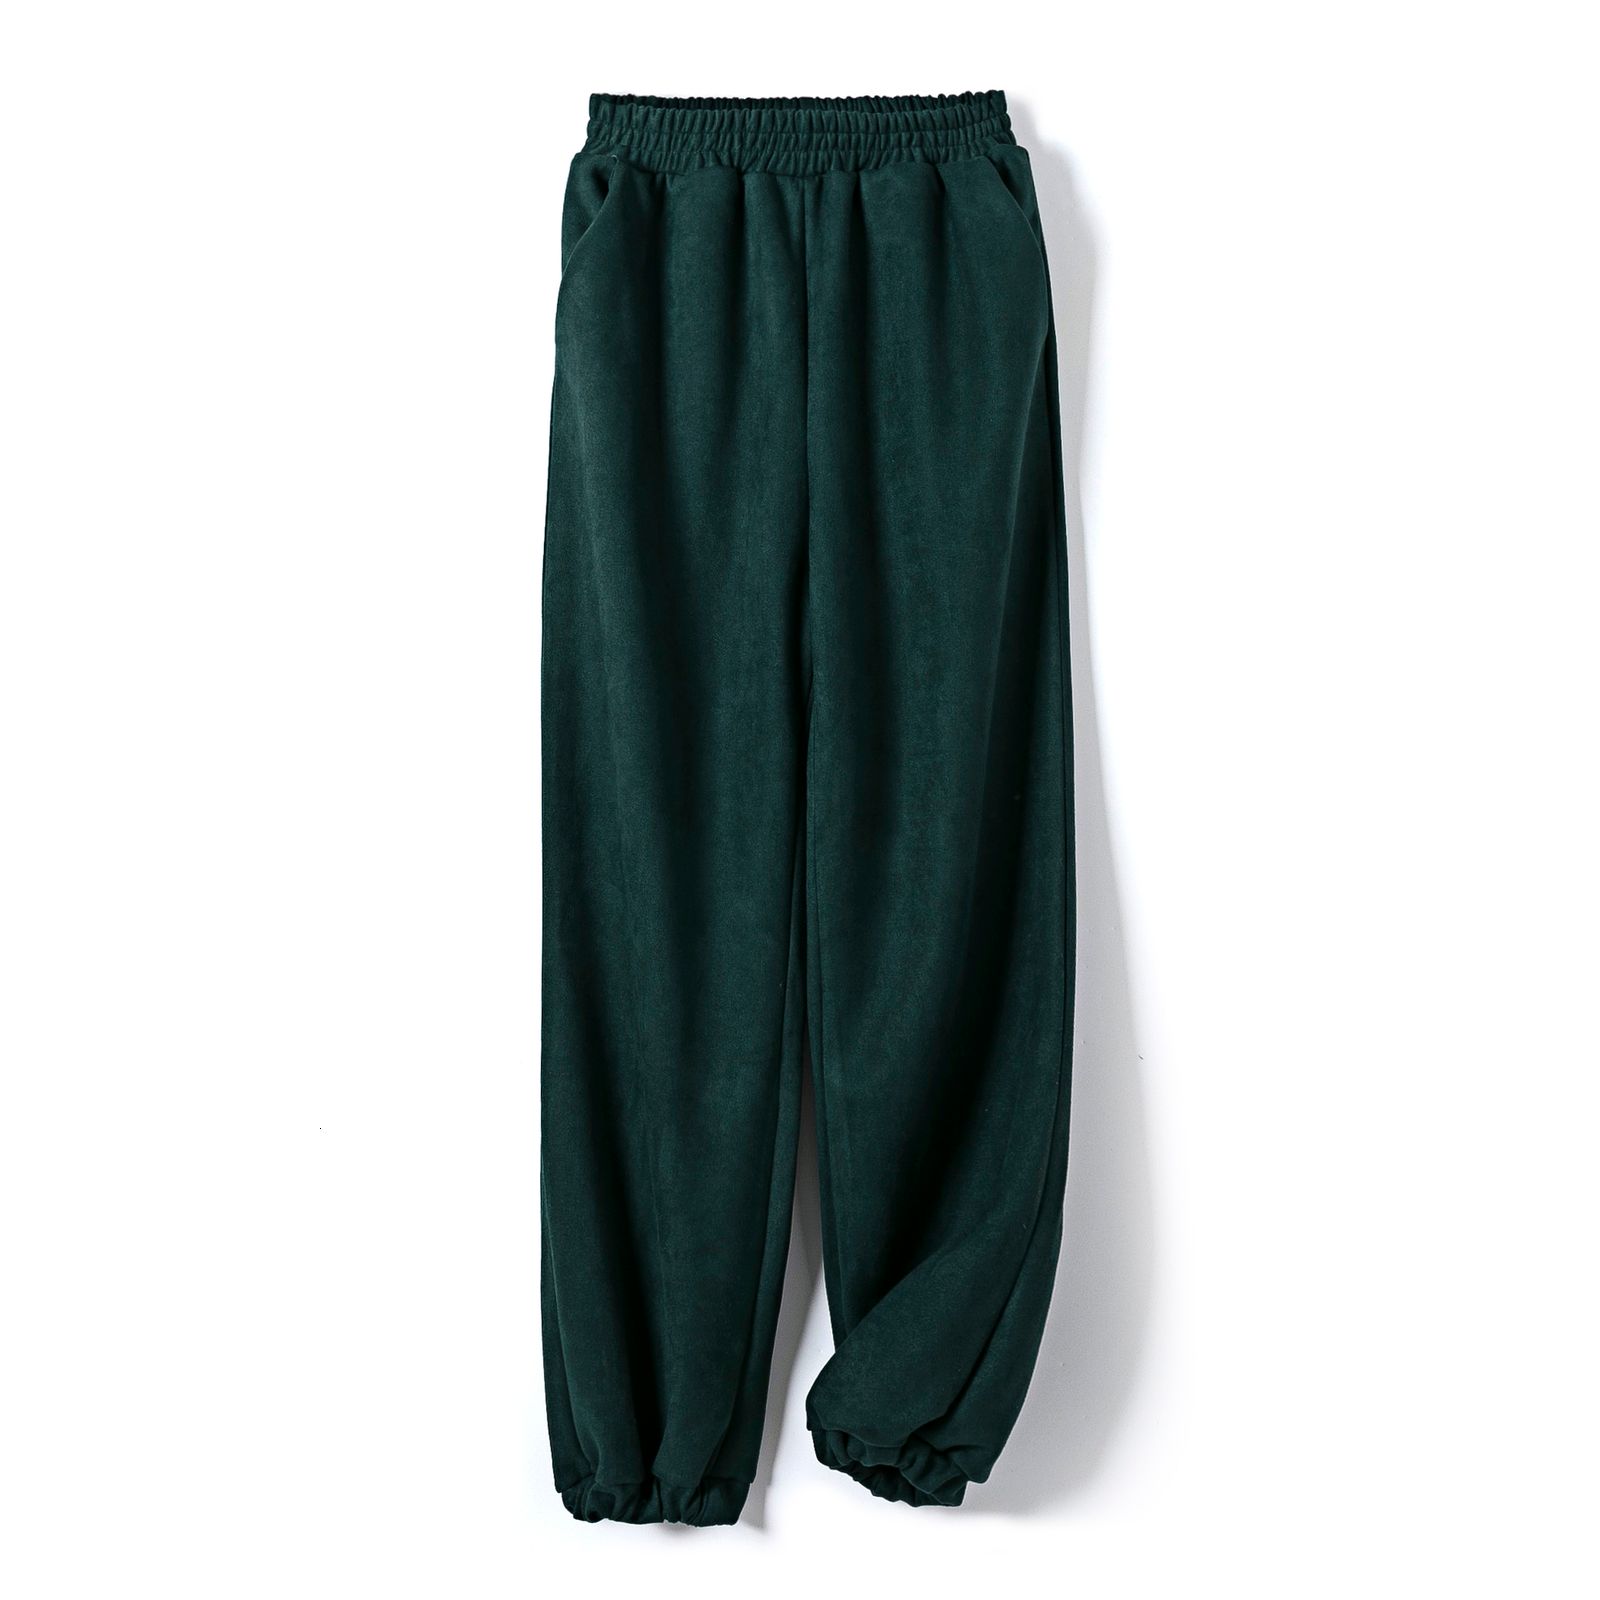 zwartachtige groene broek